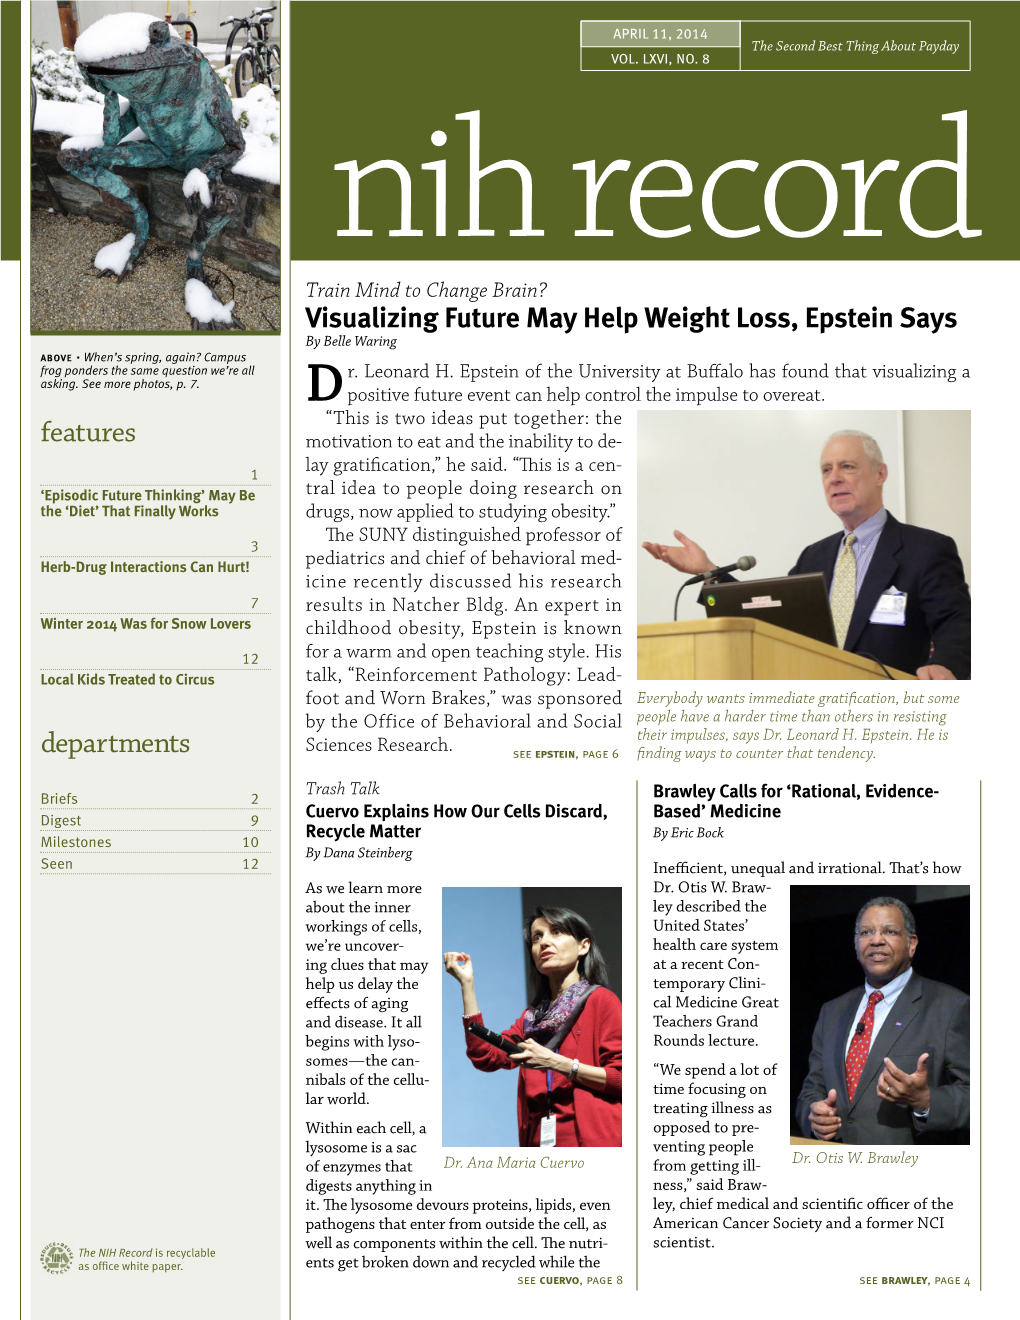 April 11, 2014, NIH Record, Vol. LXVI, No. 8